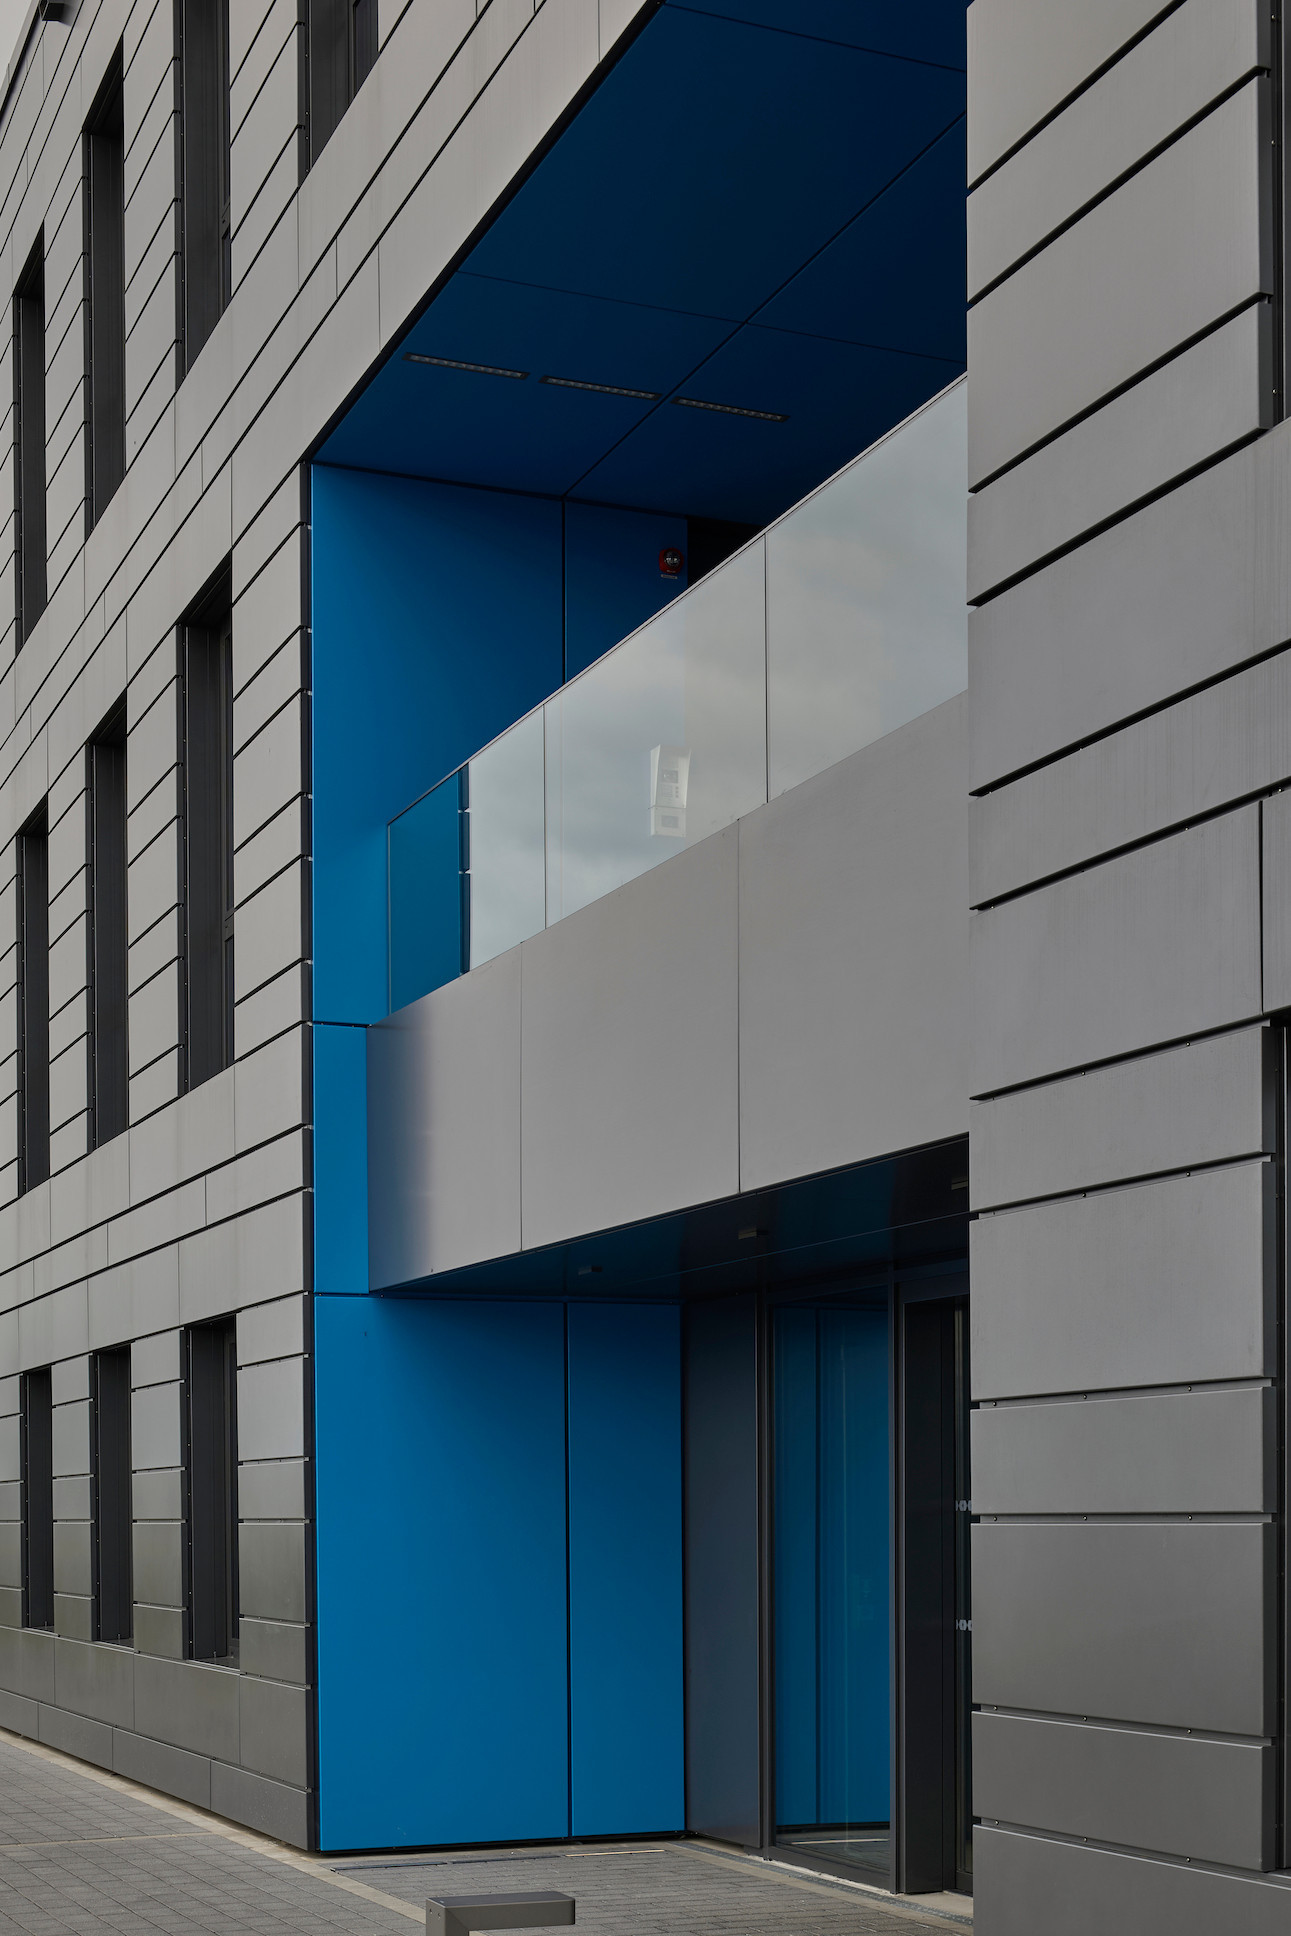 L’entrée du bâtiment est signalée par un volume évidé aux parois bleues qui contrastent avec le reste de la façade. (Photo: Eric Chenal)